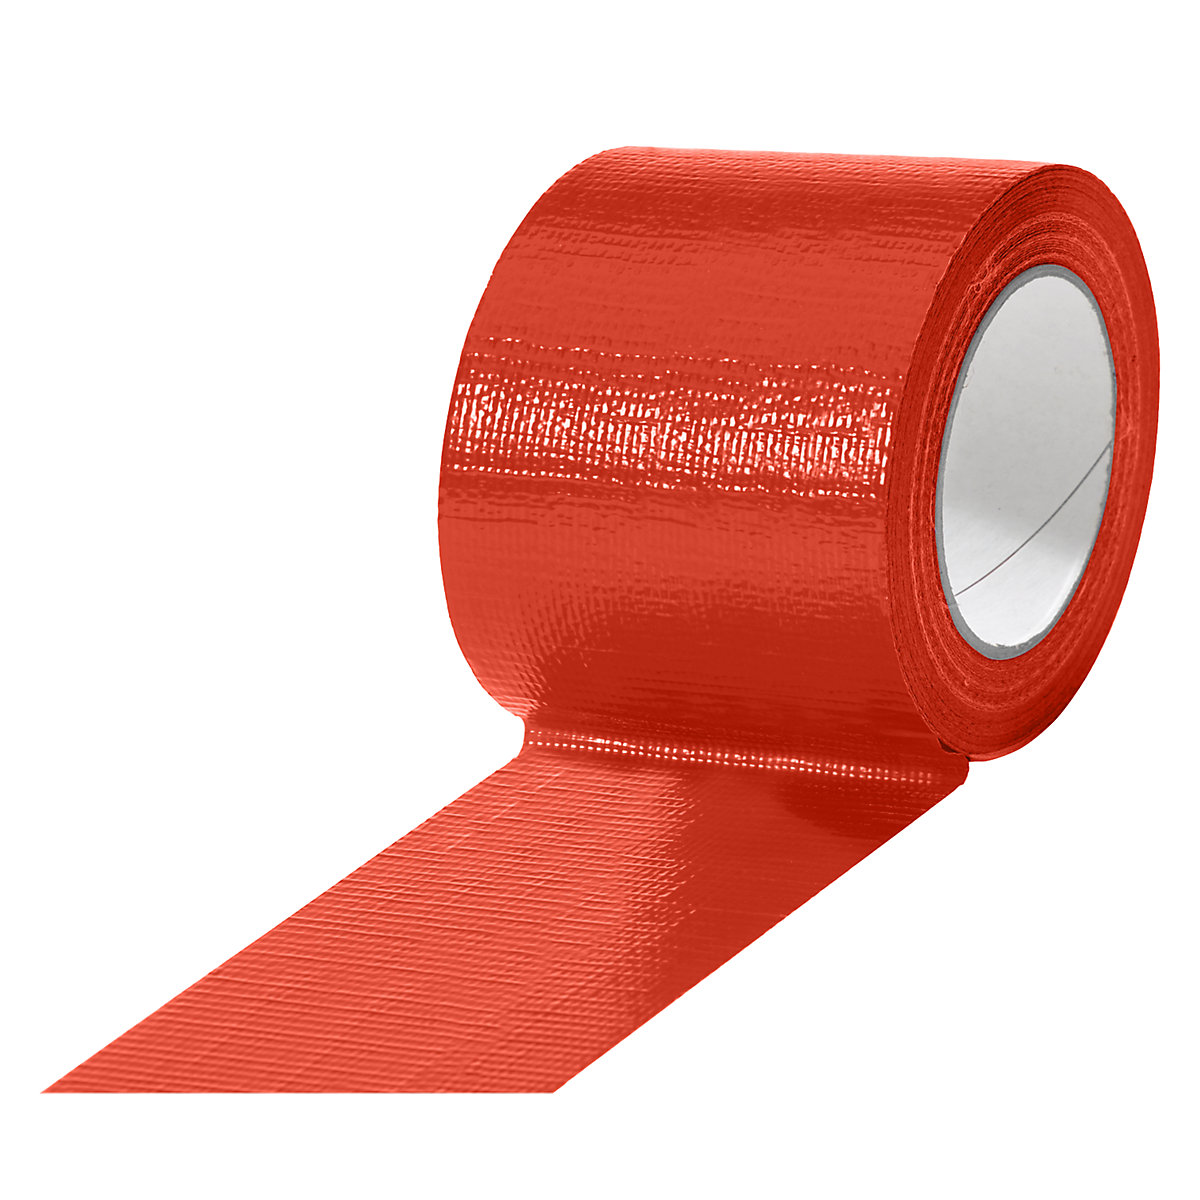 Traka od tkanine, u različitim bojama, pak. 12 rola, u crvenoj boji, širina trake 75 mm-3